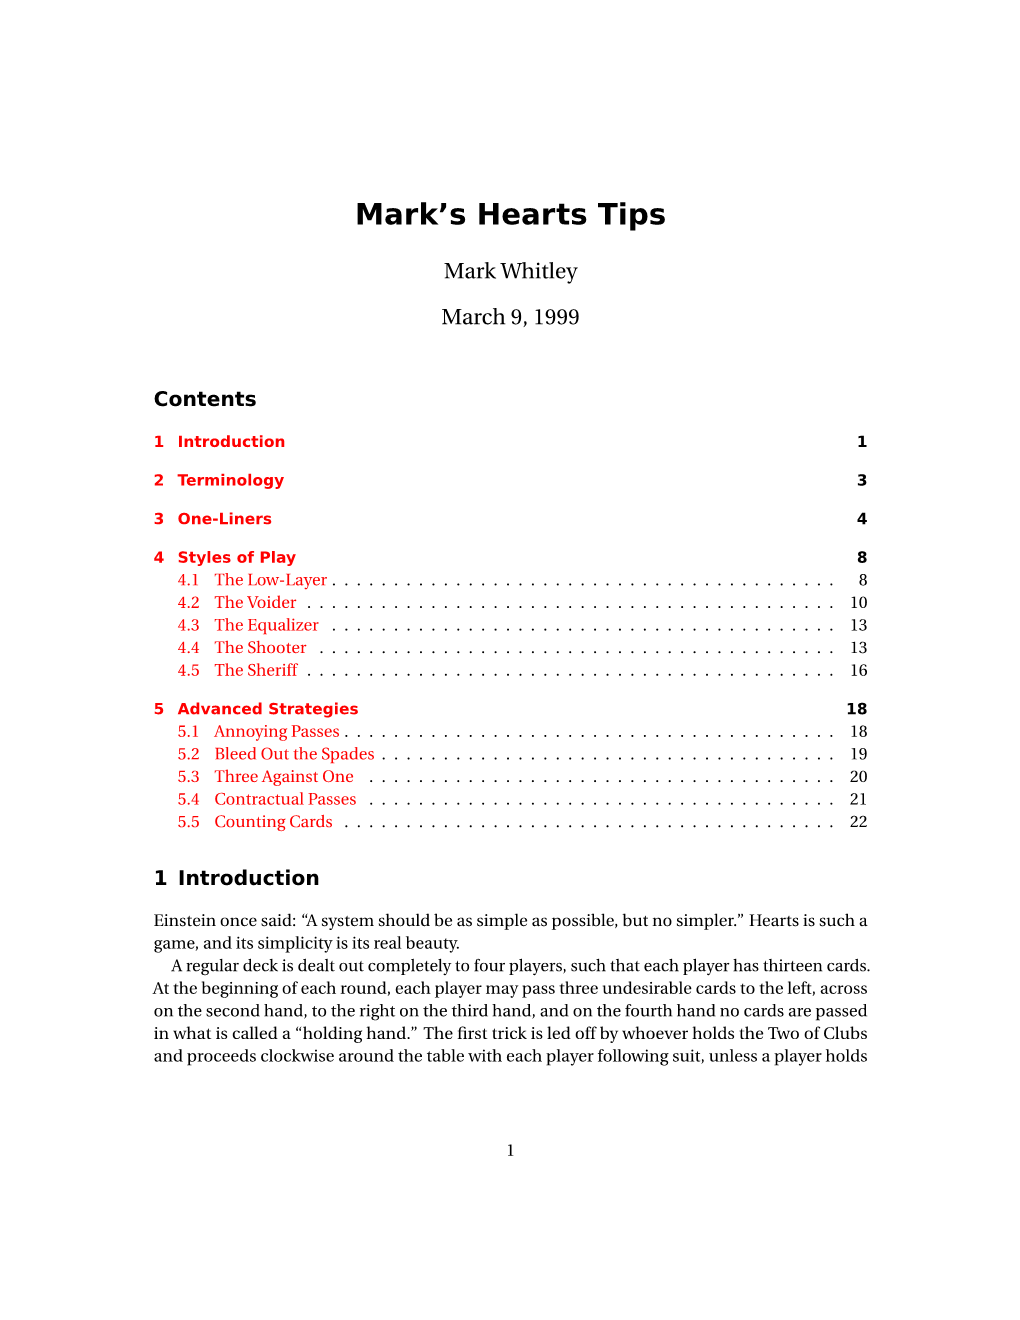 Mark's Hearts Tips (PDF)